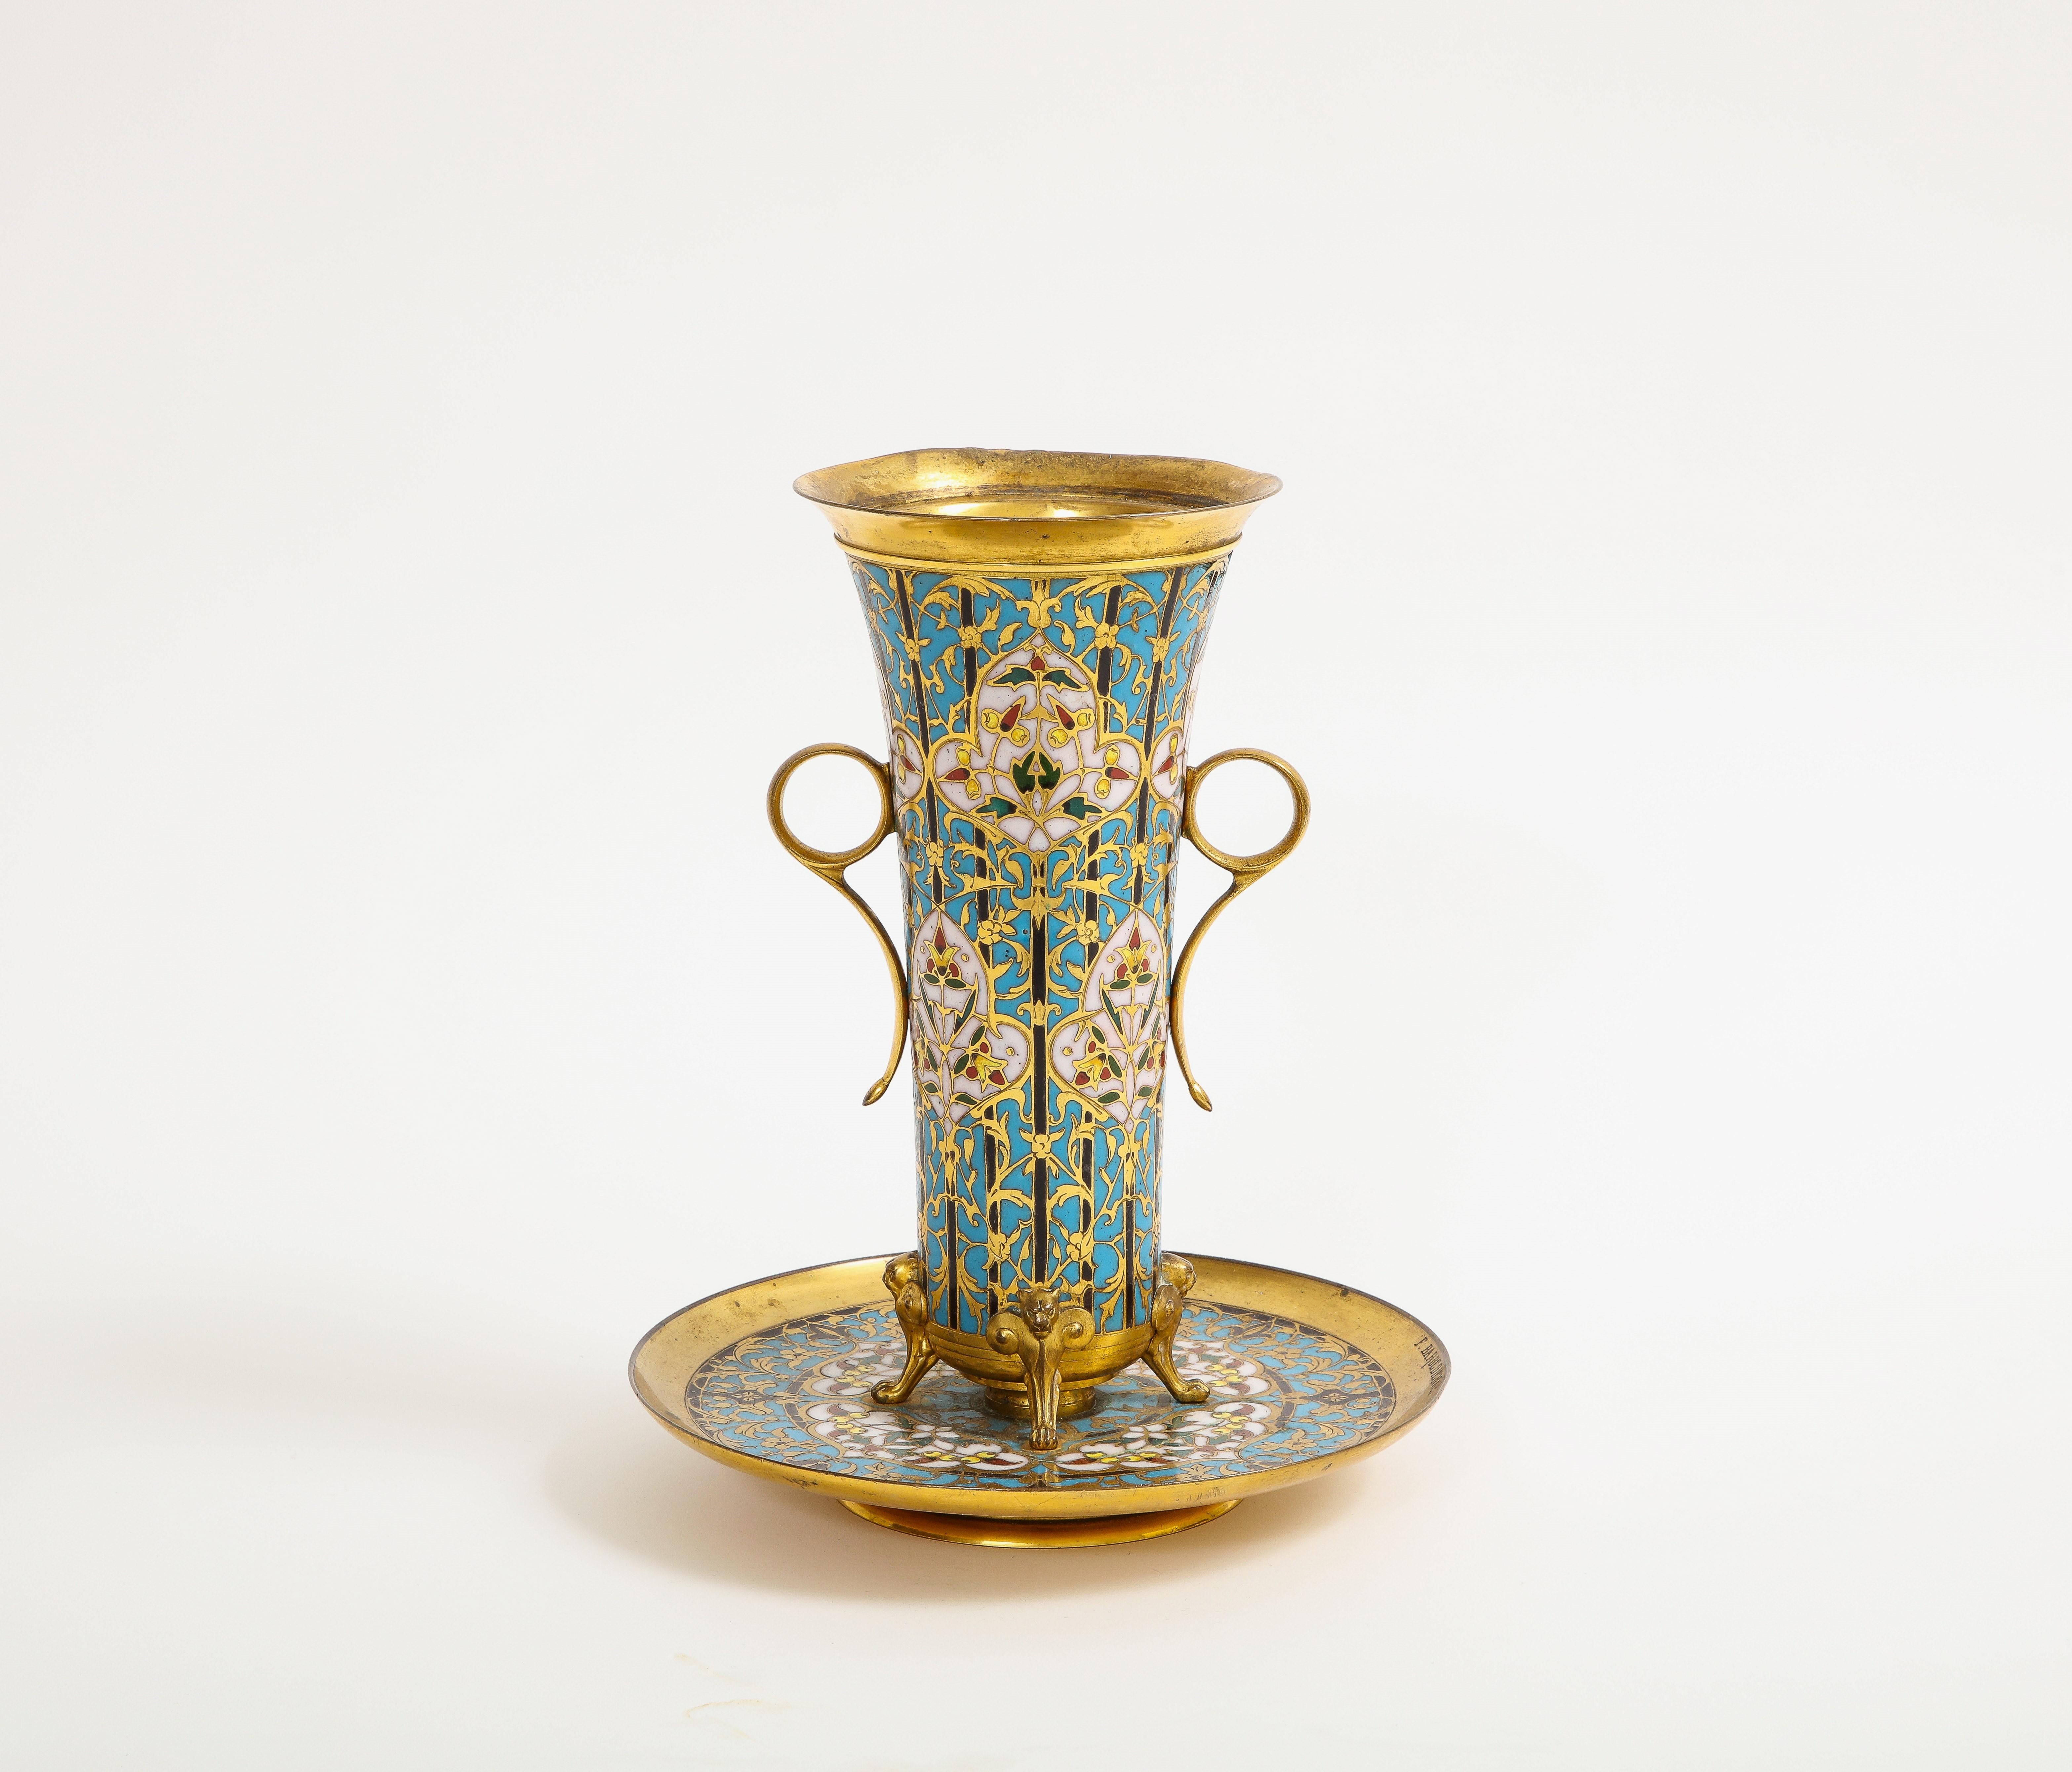 Eine fantastische 19. Jahrhundert Französisch islamischen / orientalischen Stil Champleve Emaille Vase und Unterteller, signiert F. Barbedienne.  Die weithalsige Vase endet in einem sich verjüngenden Korpus und steht auf vier ormolierten